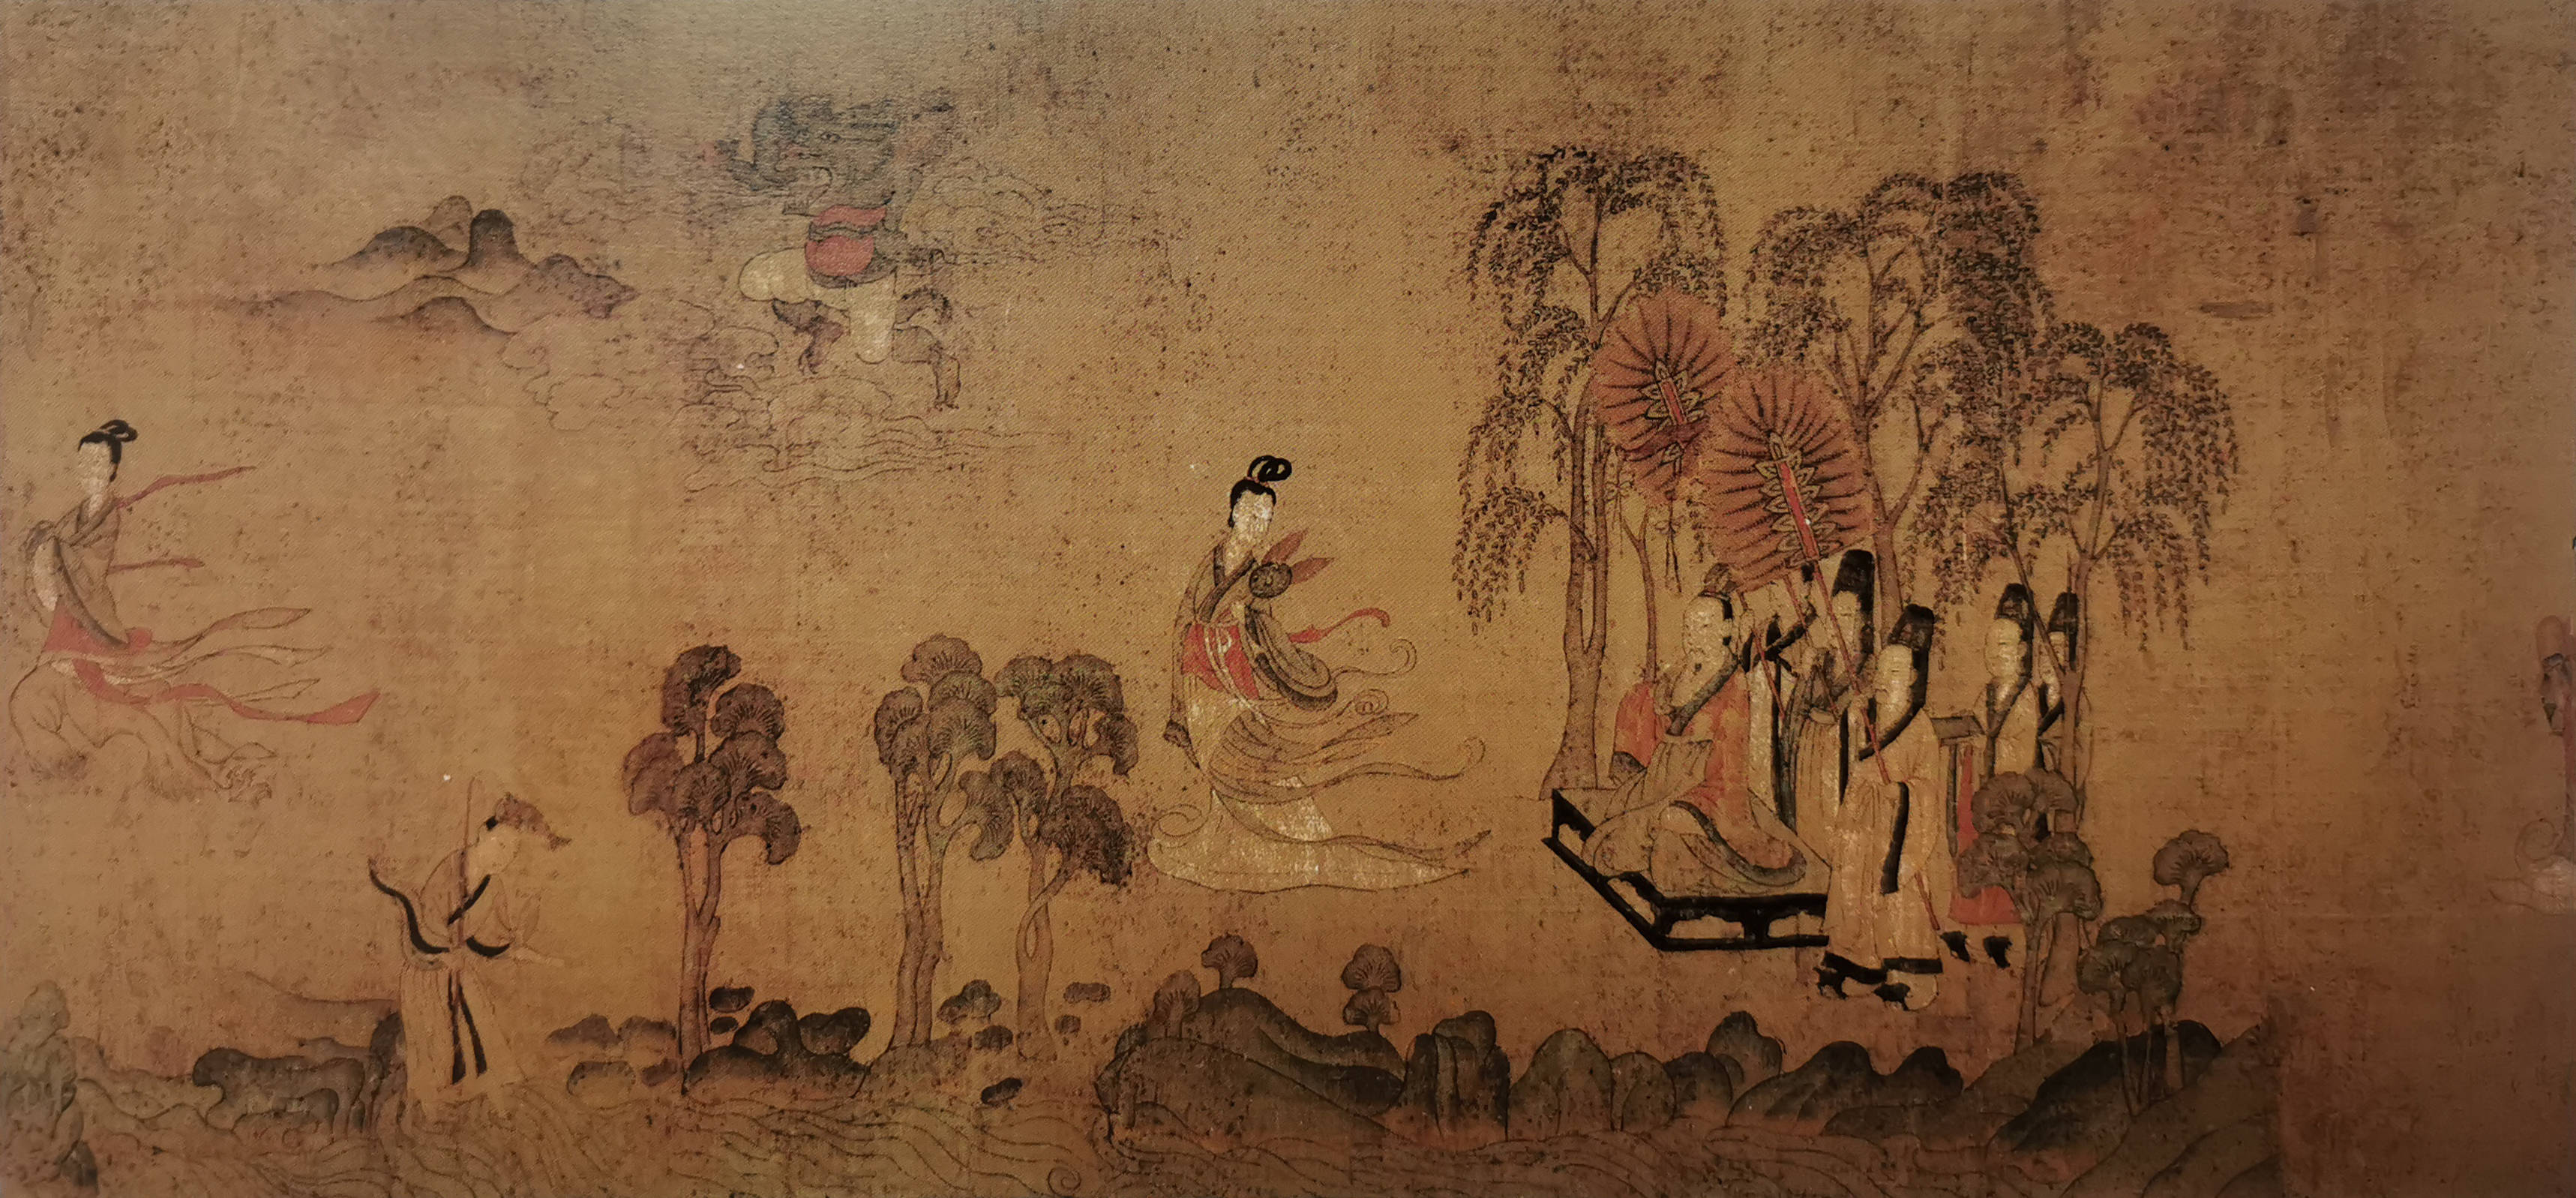 而魏晋时期,以顾恺之,张僧繇等为代表的画家正式开启了工笔绘画的发展